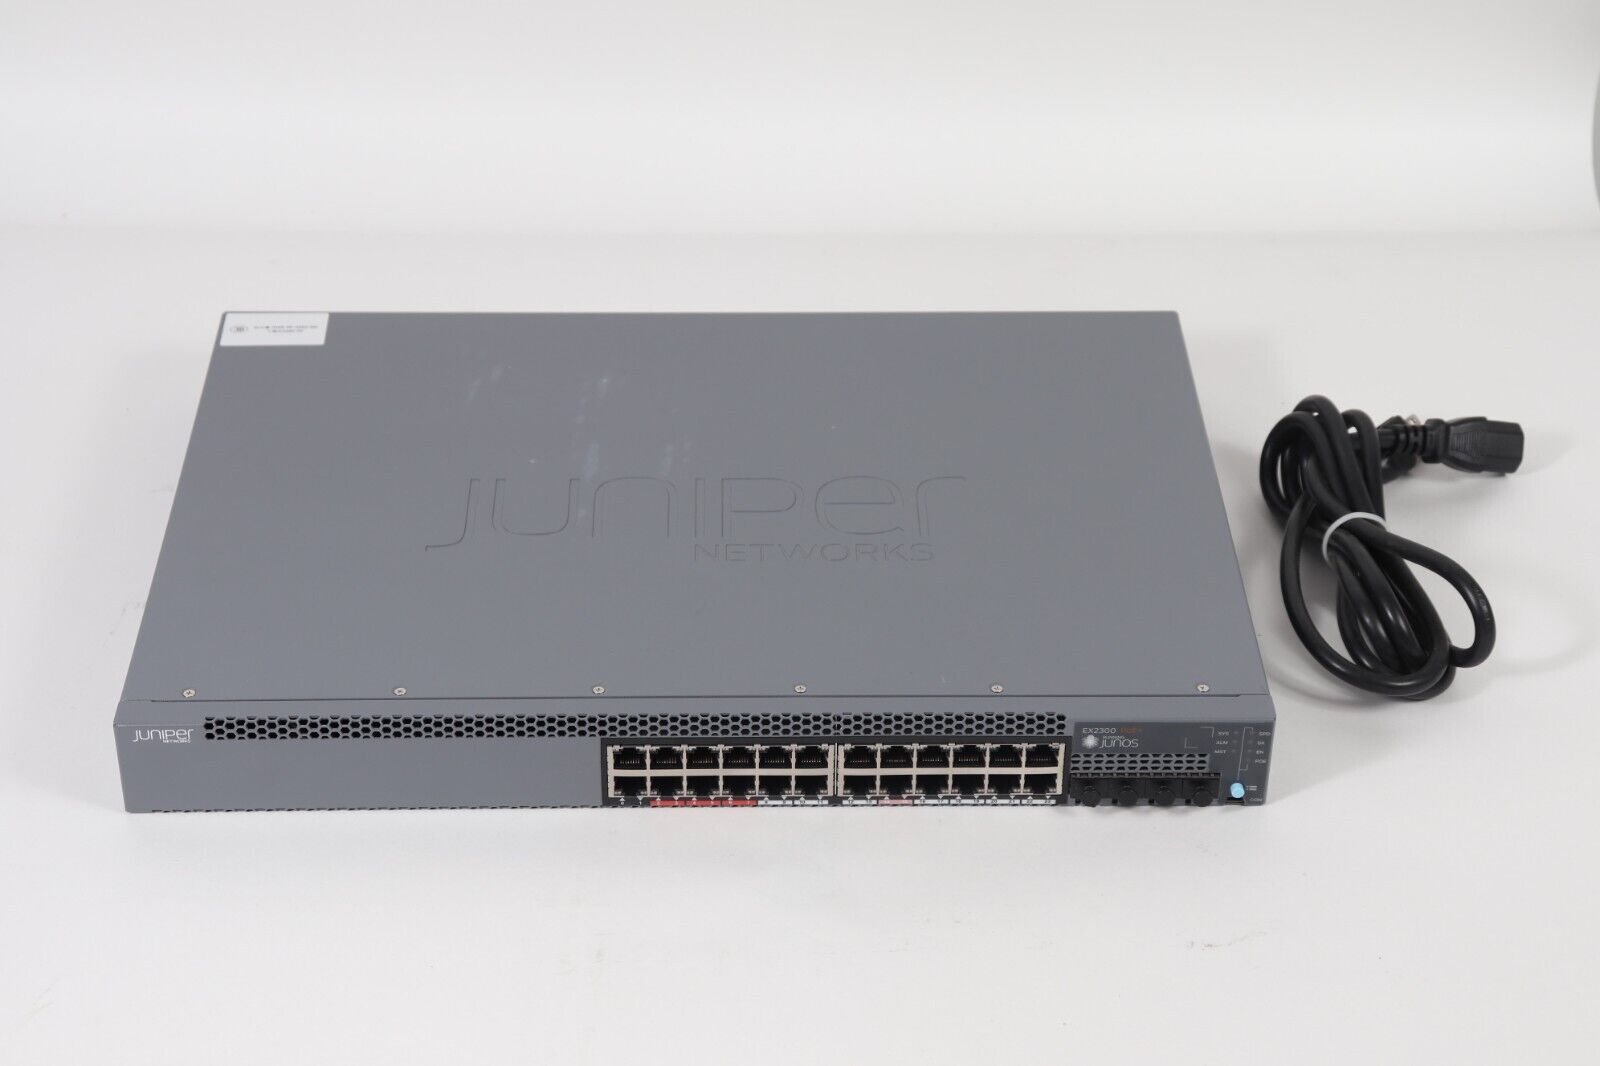 Juniper Networks EX2300-24P -Port 10/100/1000BASE-T PoE+ Ethernet Switch